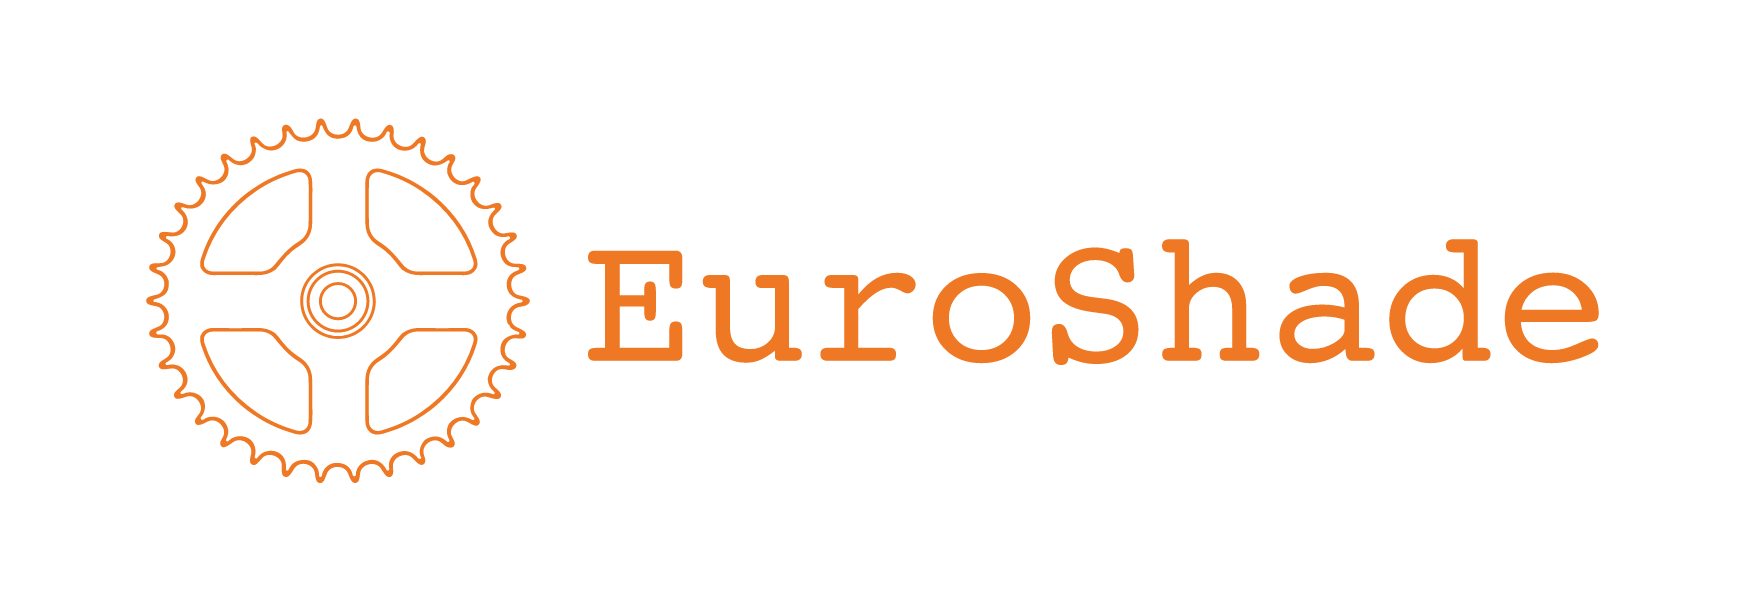 EuroShadeLogo